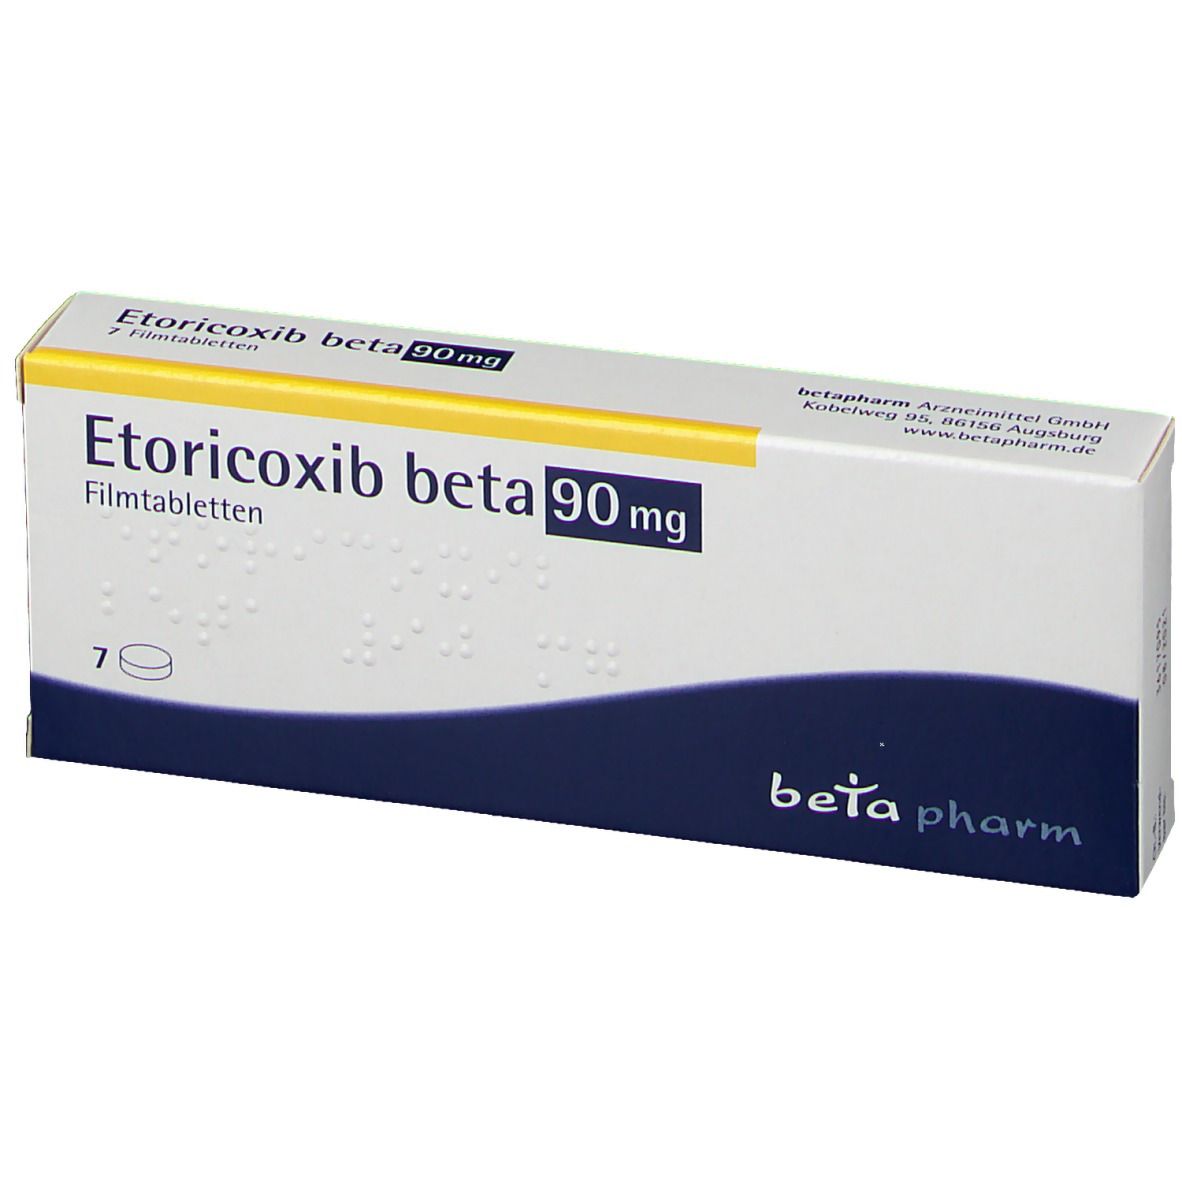 Etoricoxib beta 90 mg